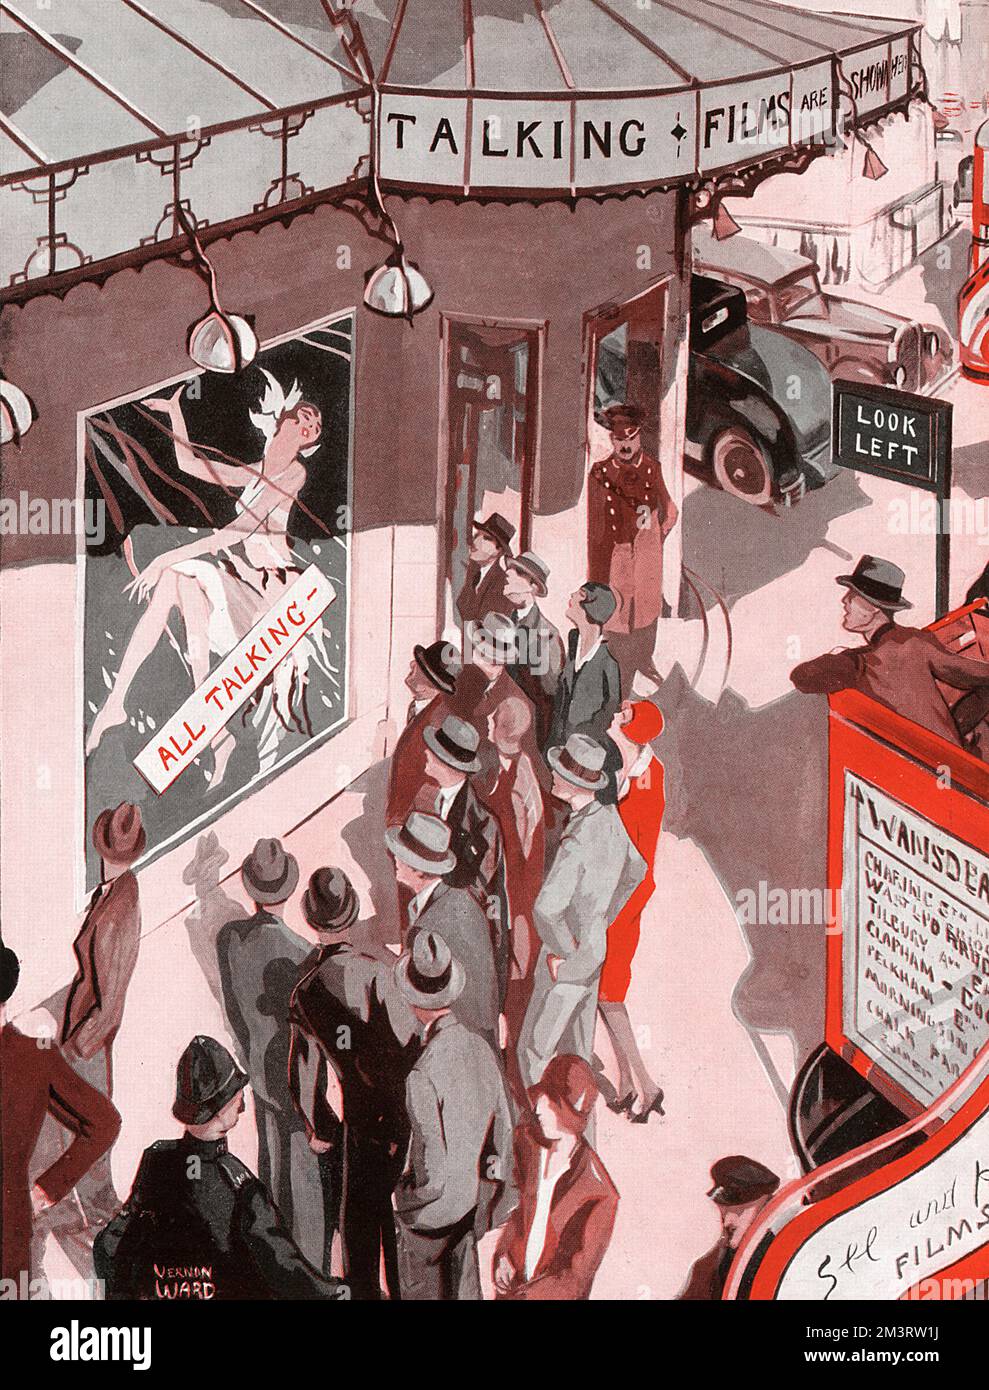 L'avènement des images de conversation enregistrées par Vernon Ward dans une illustration montrant des gens se rassemblant à l'extérieur d'un cinéma où une affiche proclame la projection du film est « tout parler ». Date: 1929 Banque D'Images